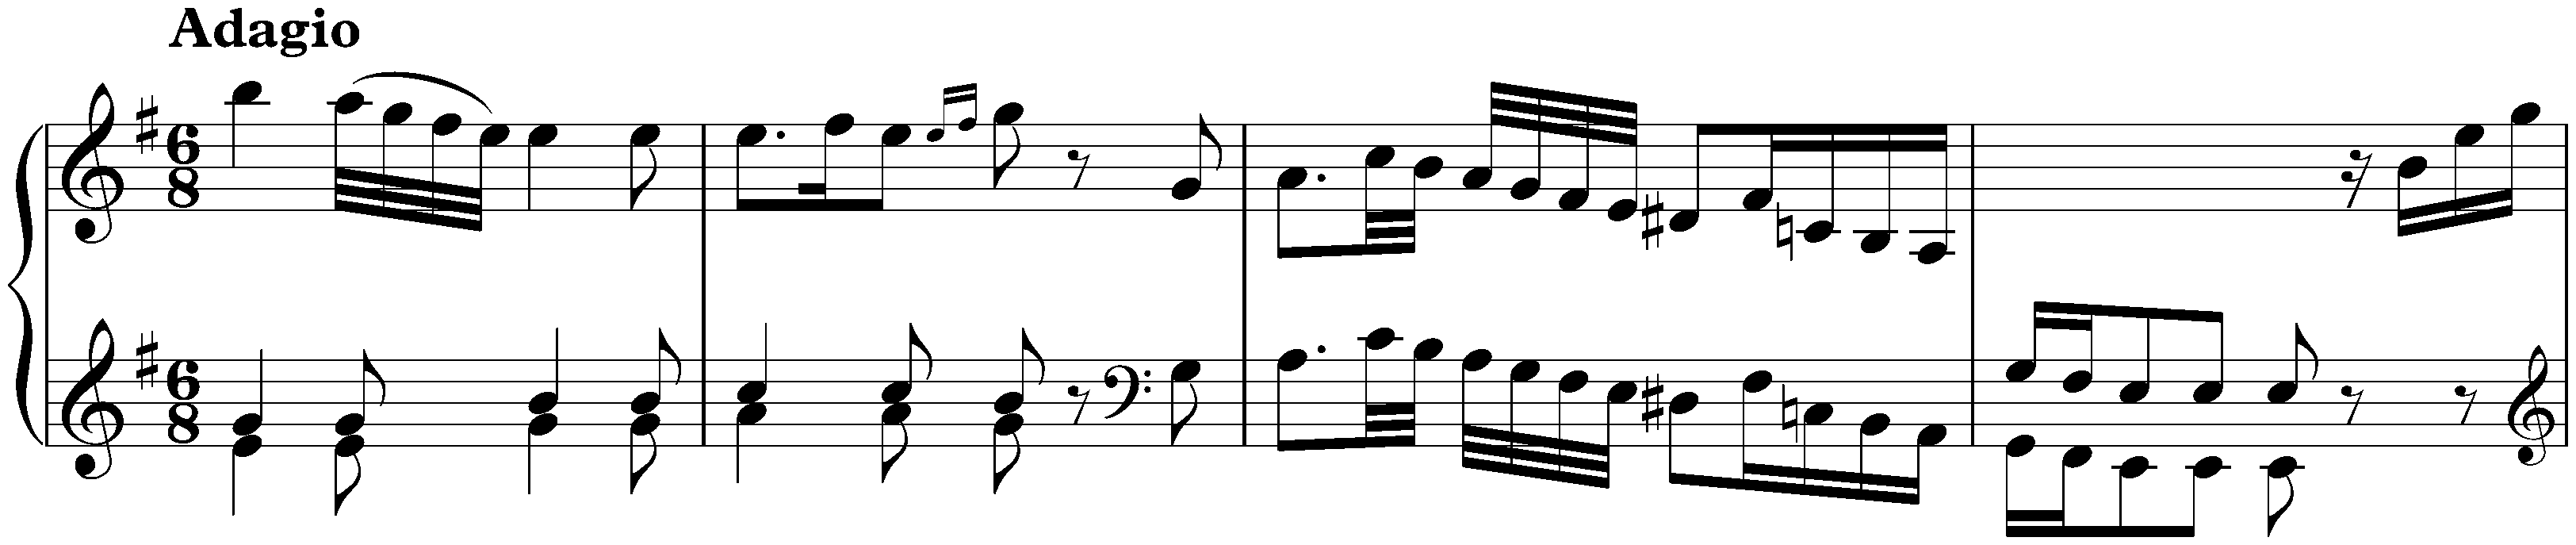 Sonata in E minor, Hob. XVI:47bis; 1. Adagio